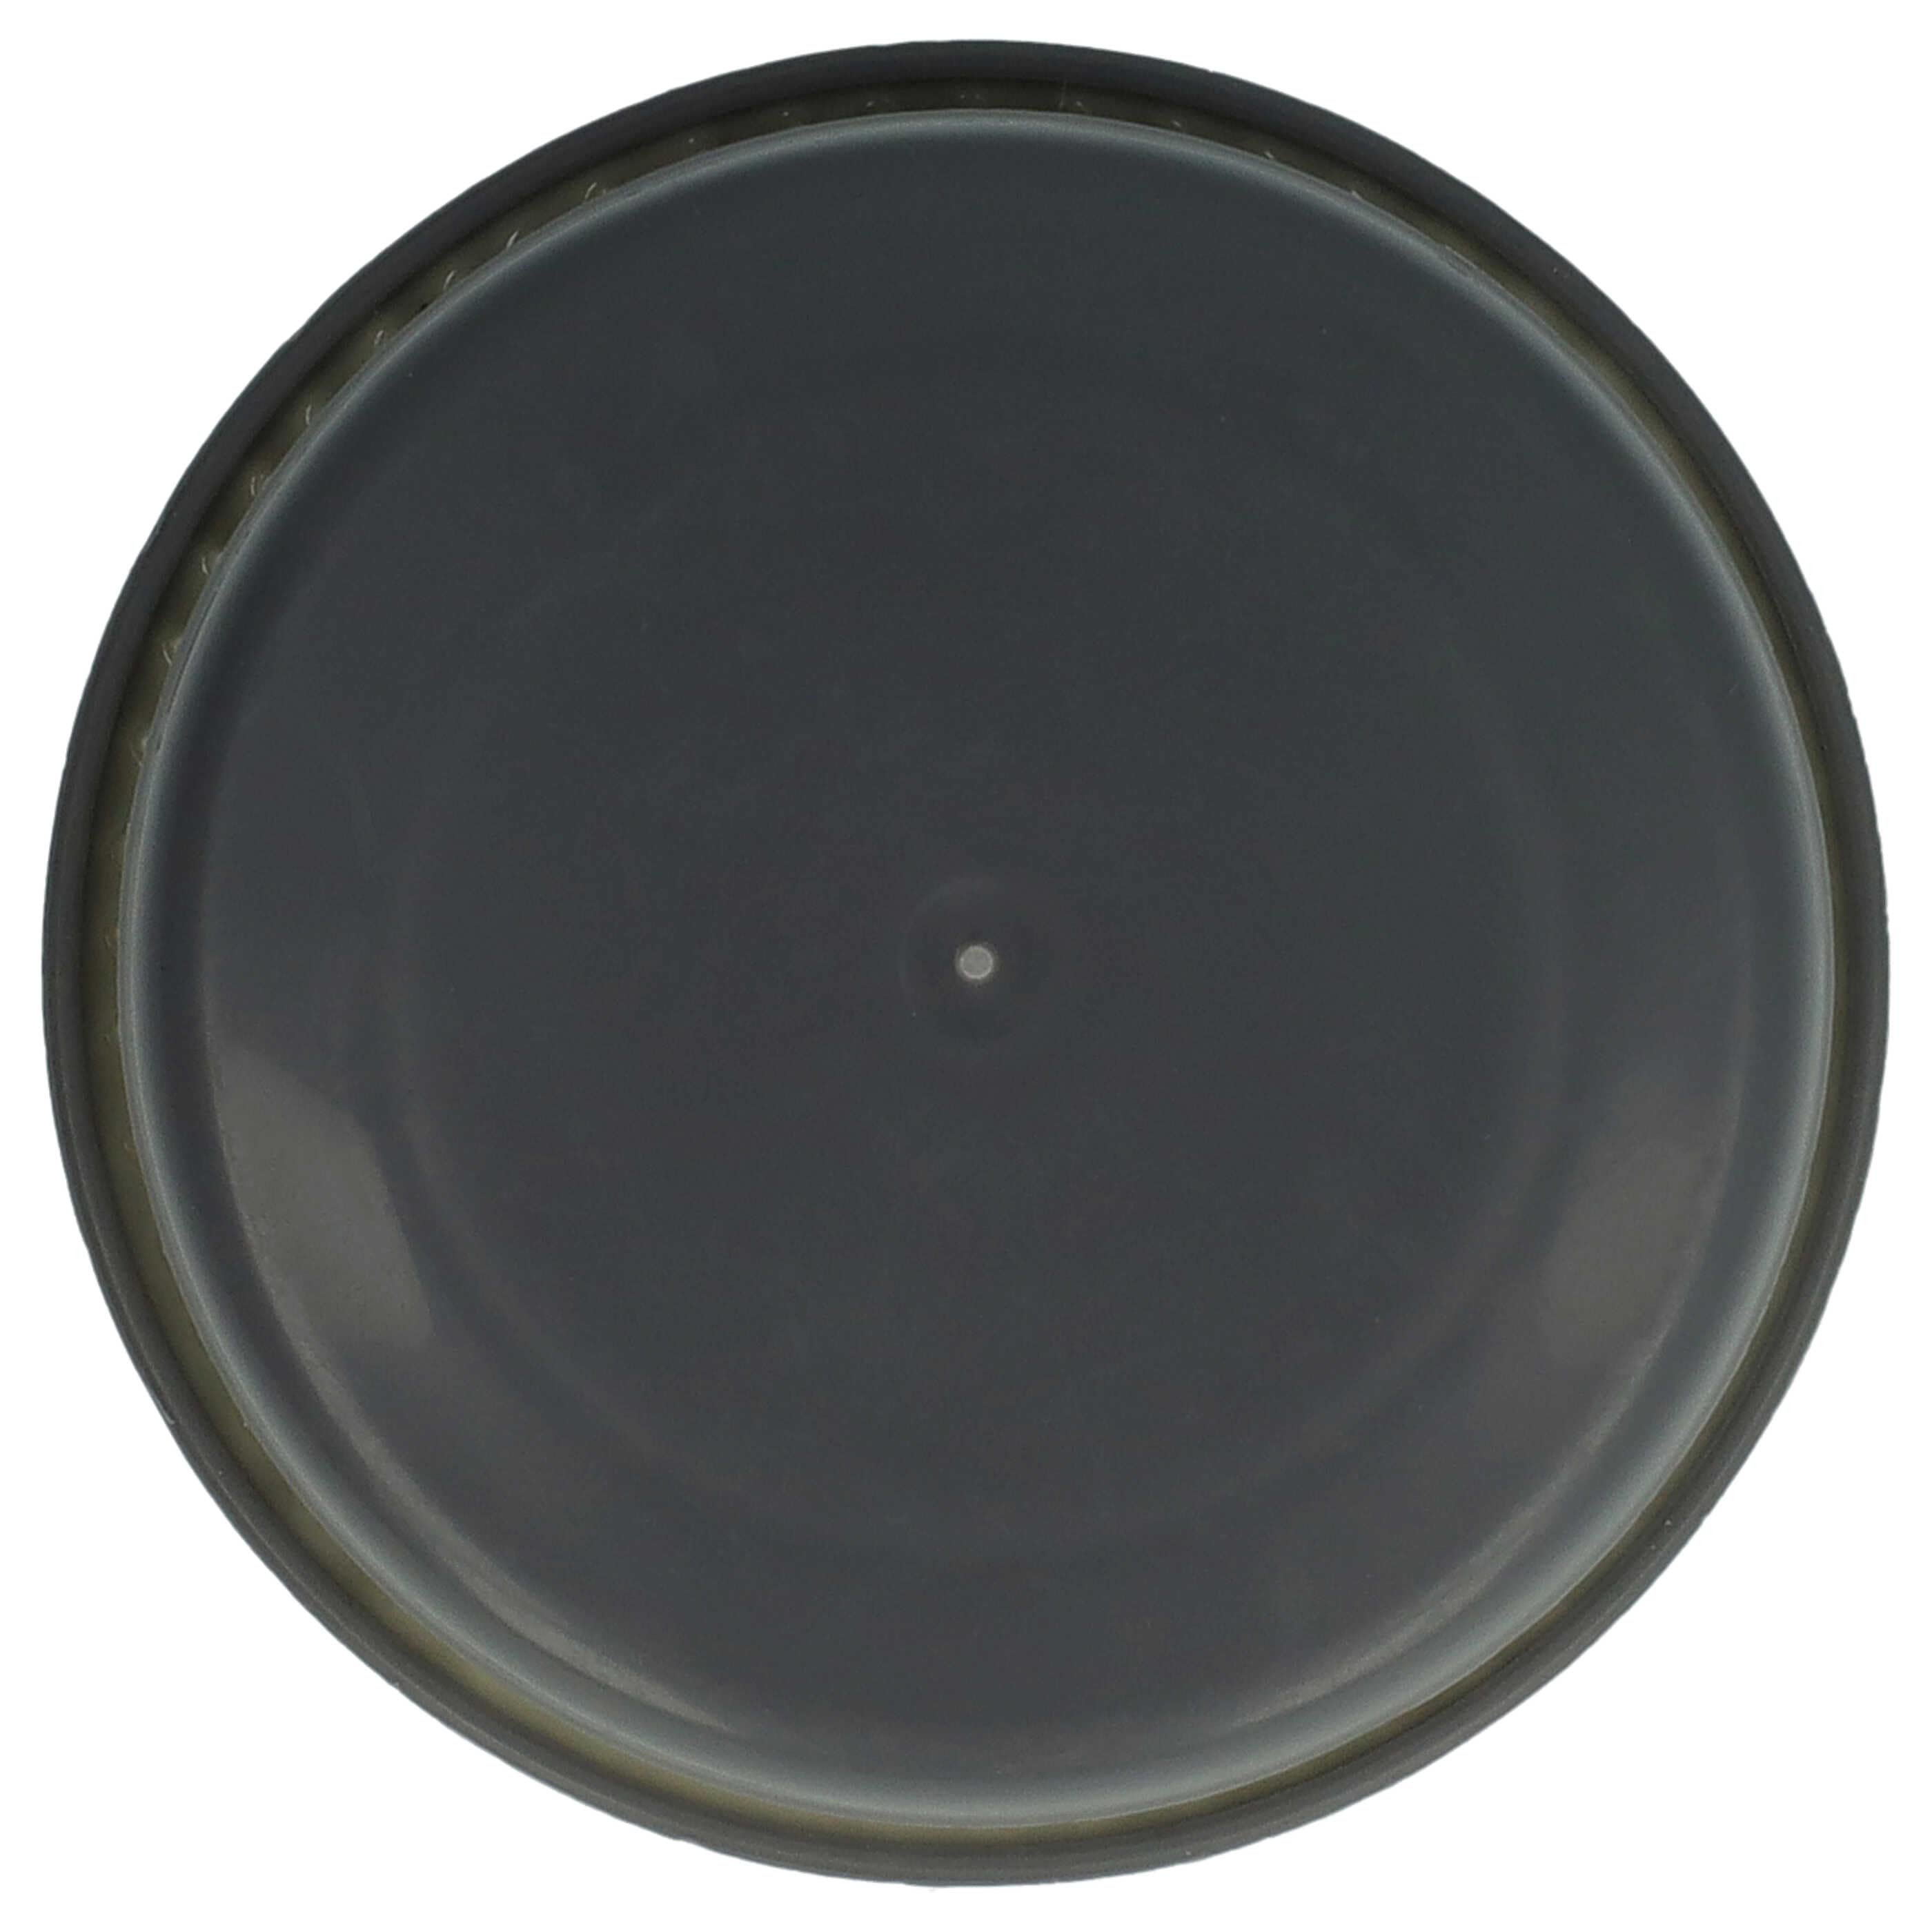 Filtr do odkurzacza Black & Decker zamiennik Black & Decker VFORB10 - filtr, biały / szary